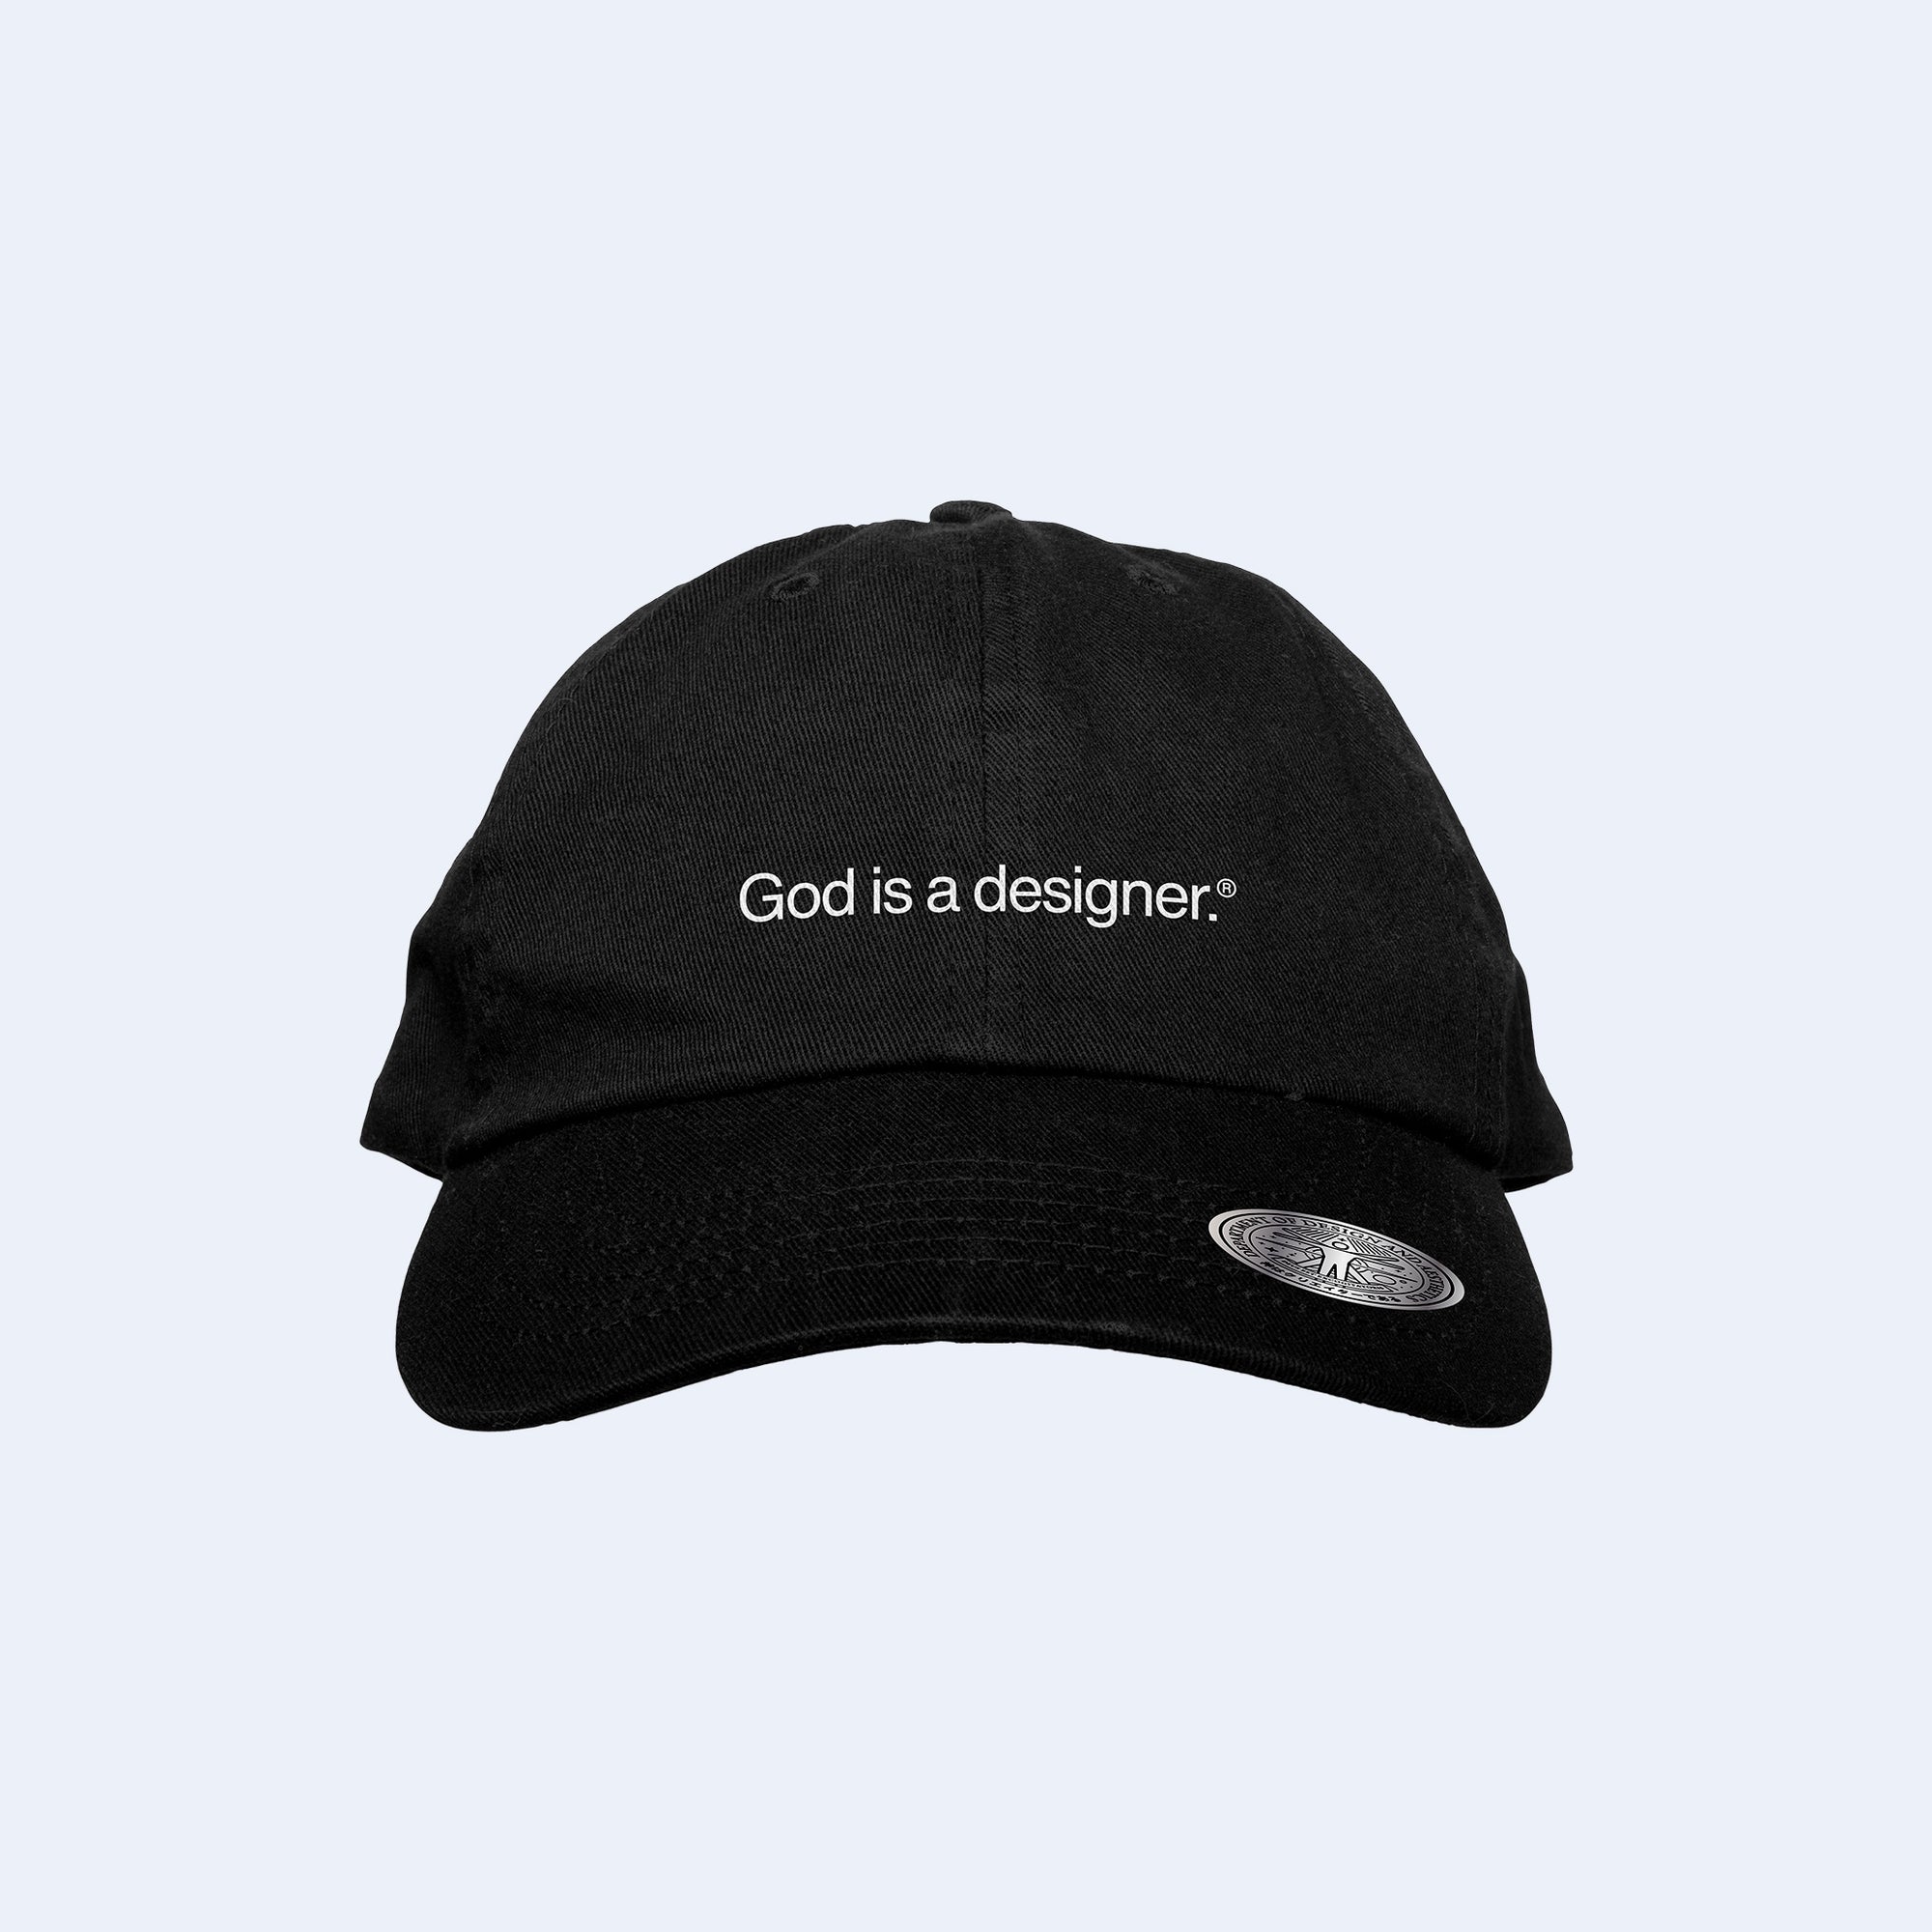 GIAD™ Classic 5-Panel Dad Cap [Black] - God is a designer.®